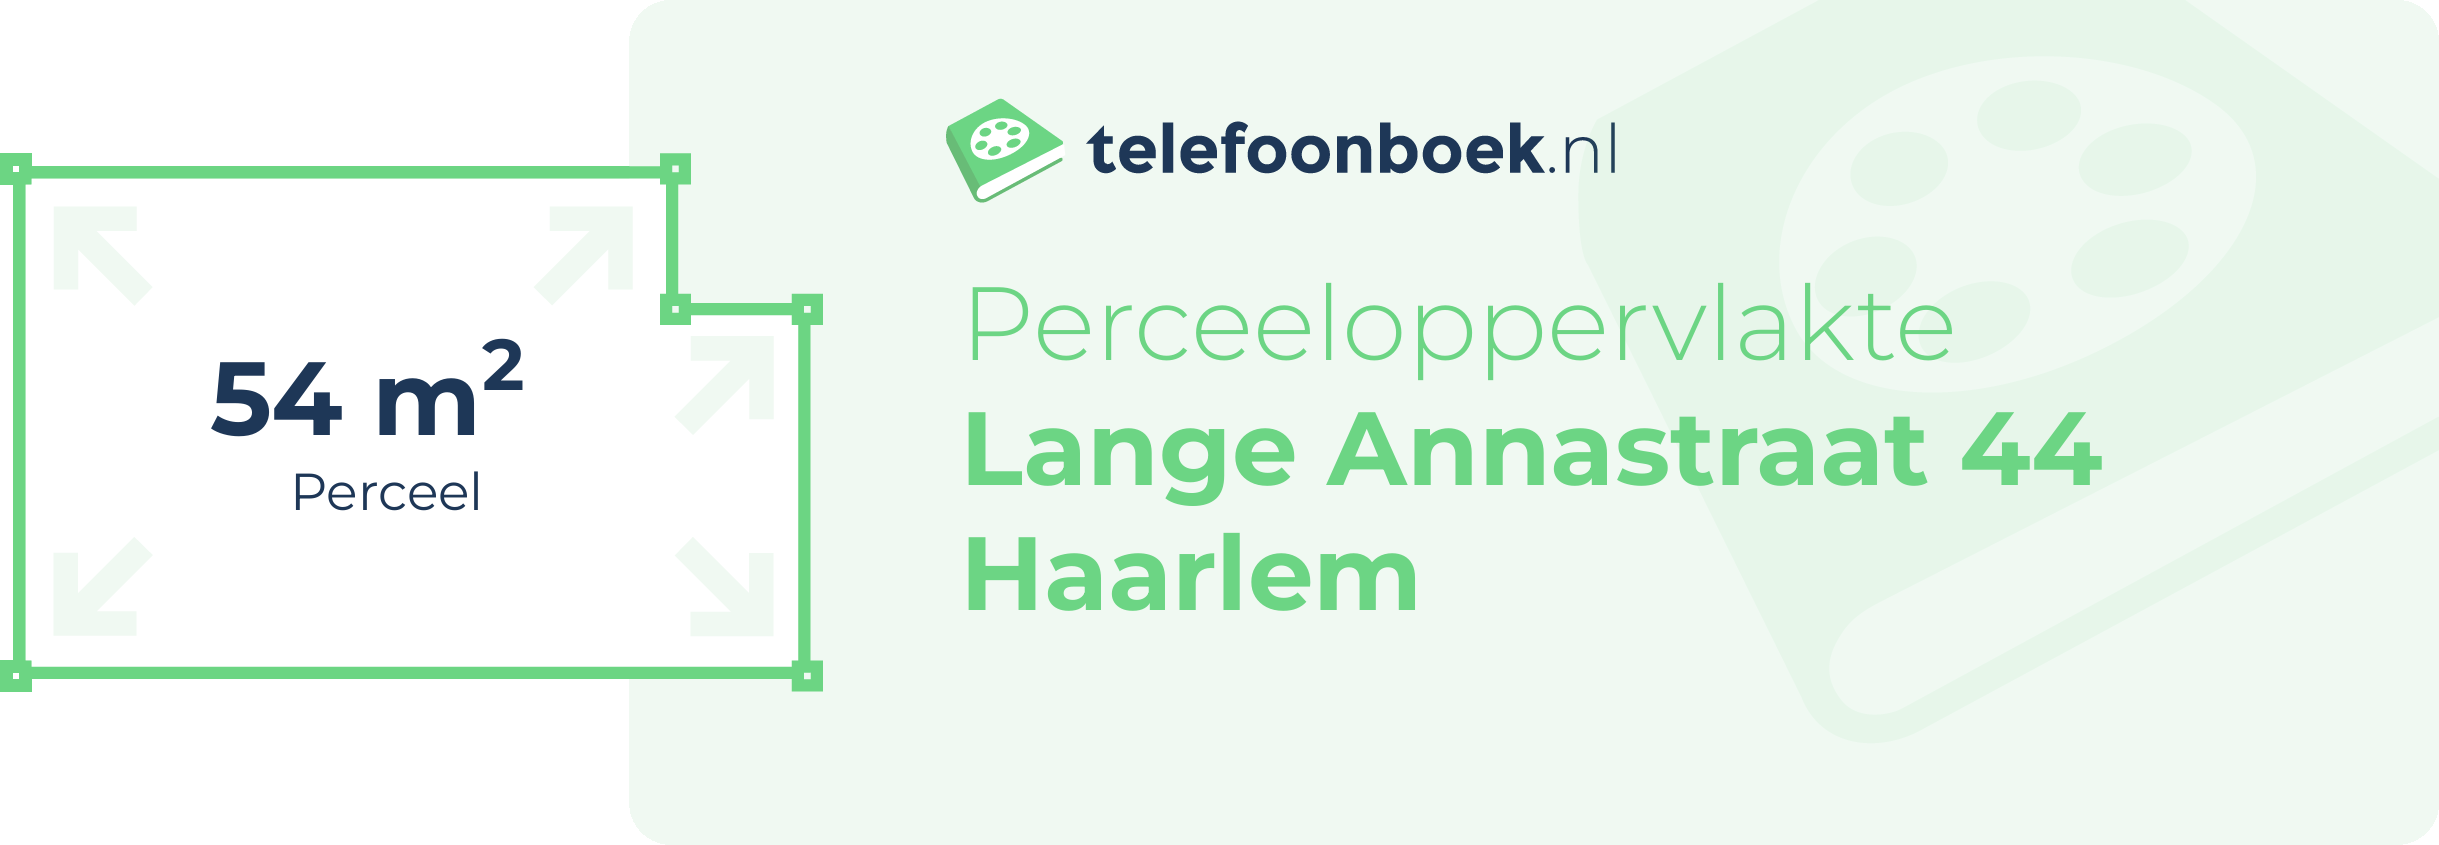 Perceeloppervlakte Lange Annastraat 44 Haarlem